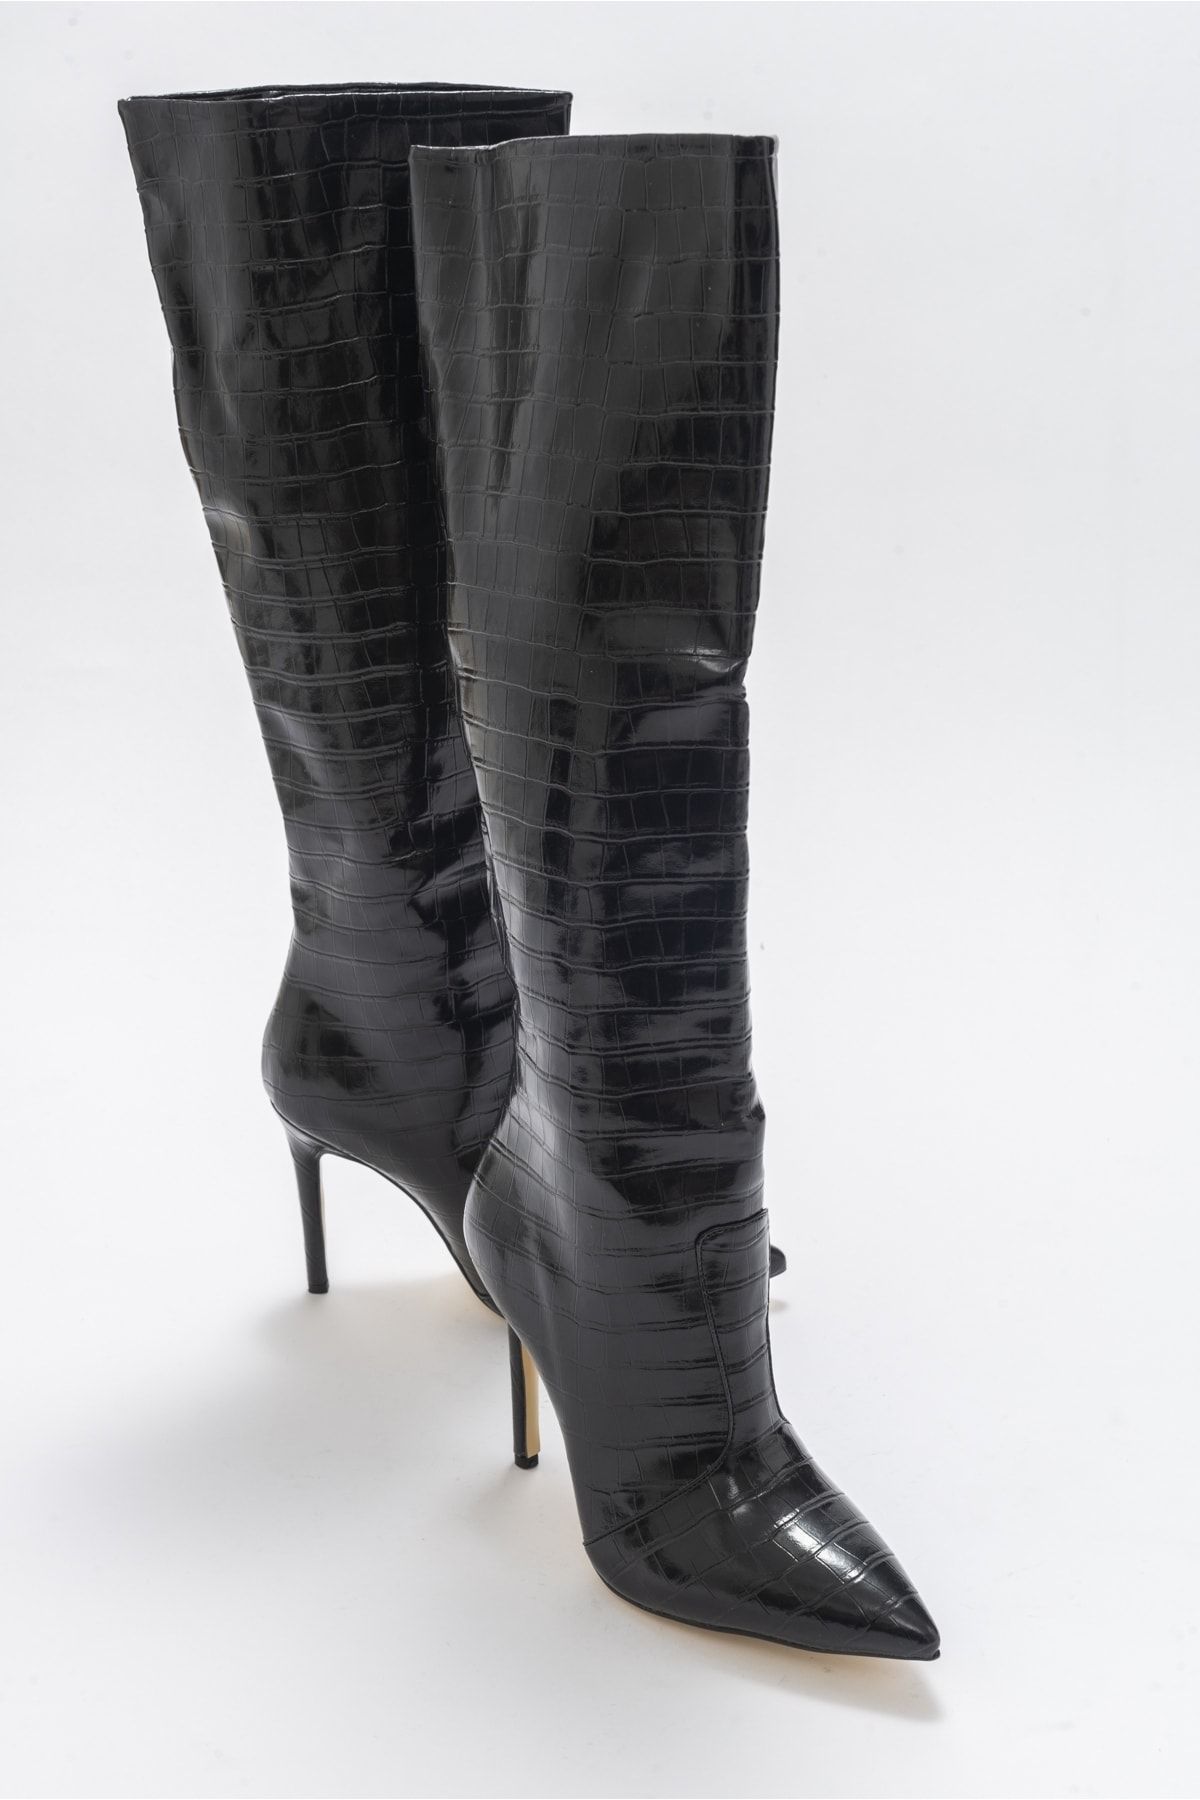 luvishoes Navy Siyah Baskılı Kadın Topuklu Çizme